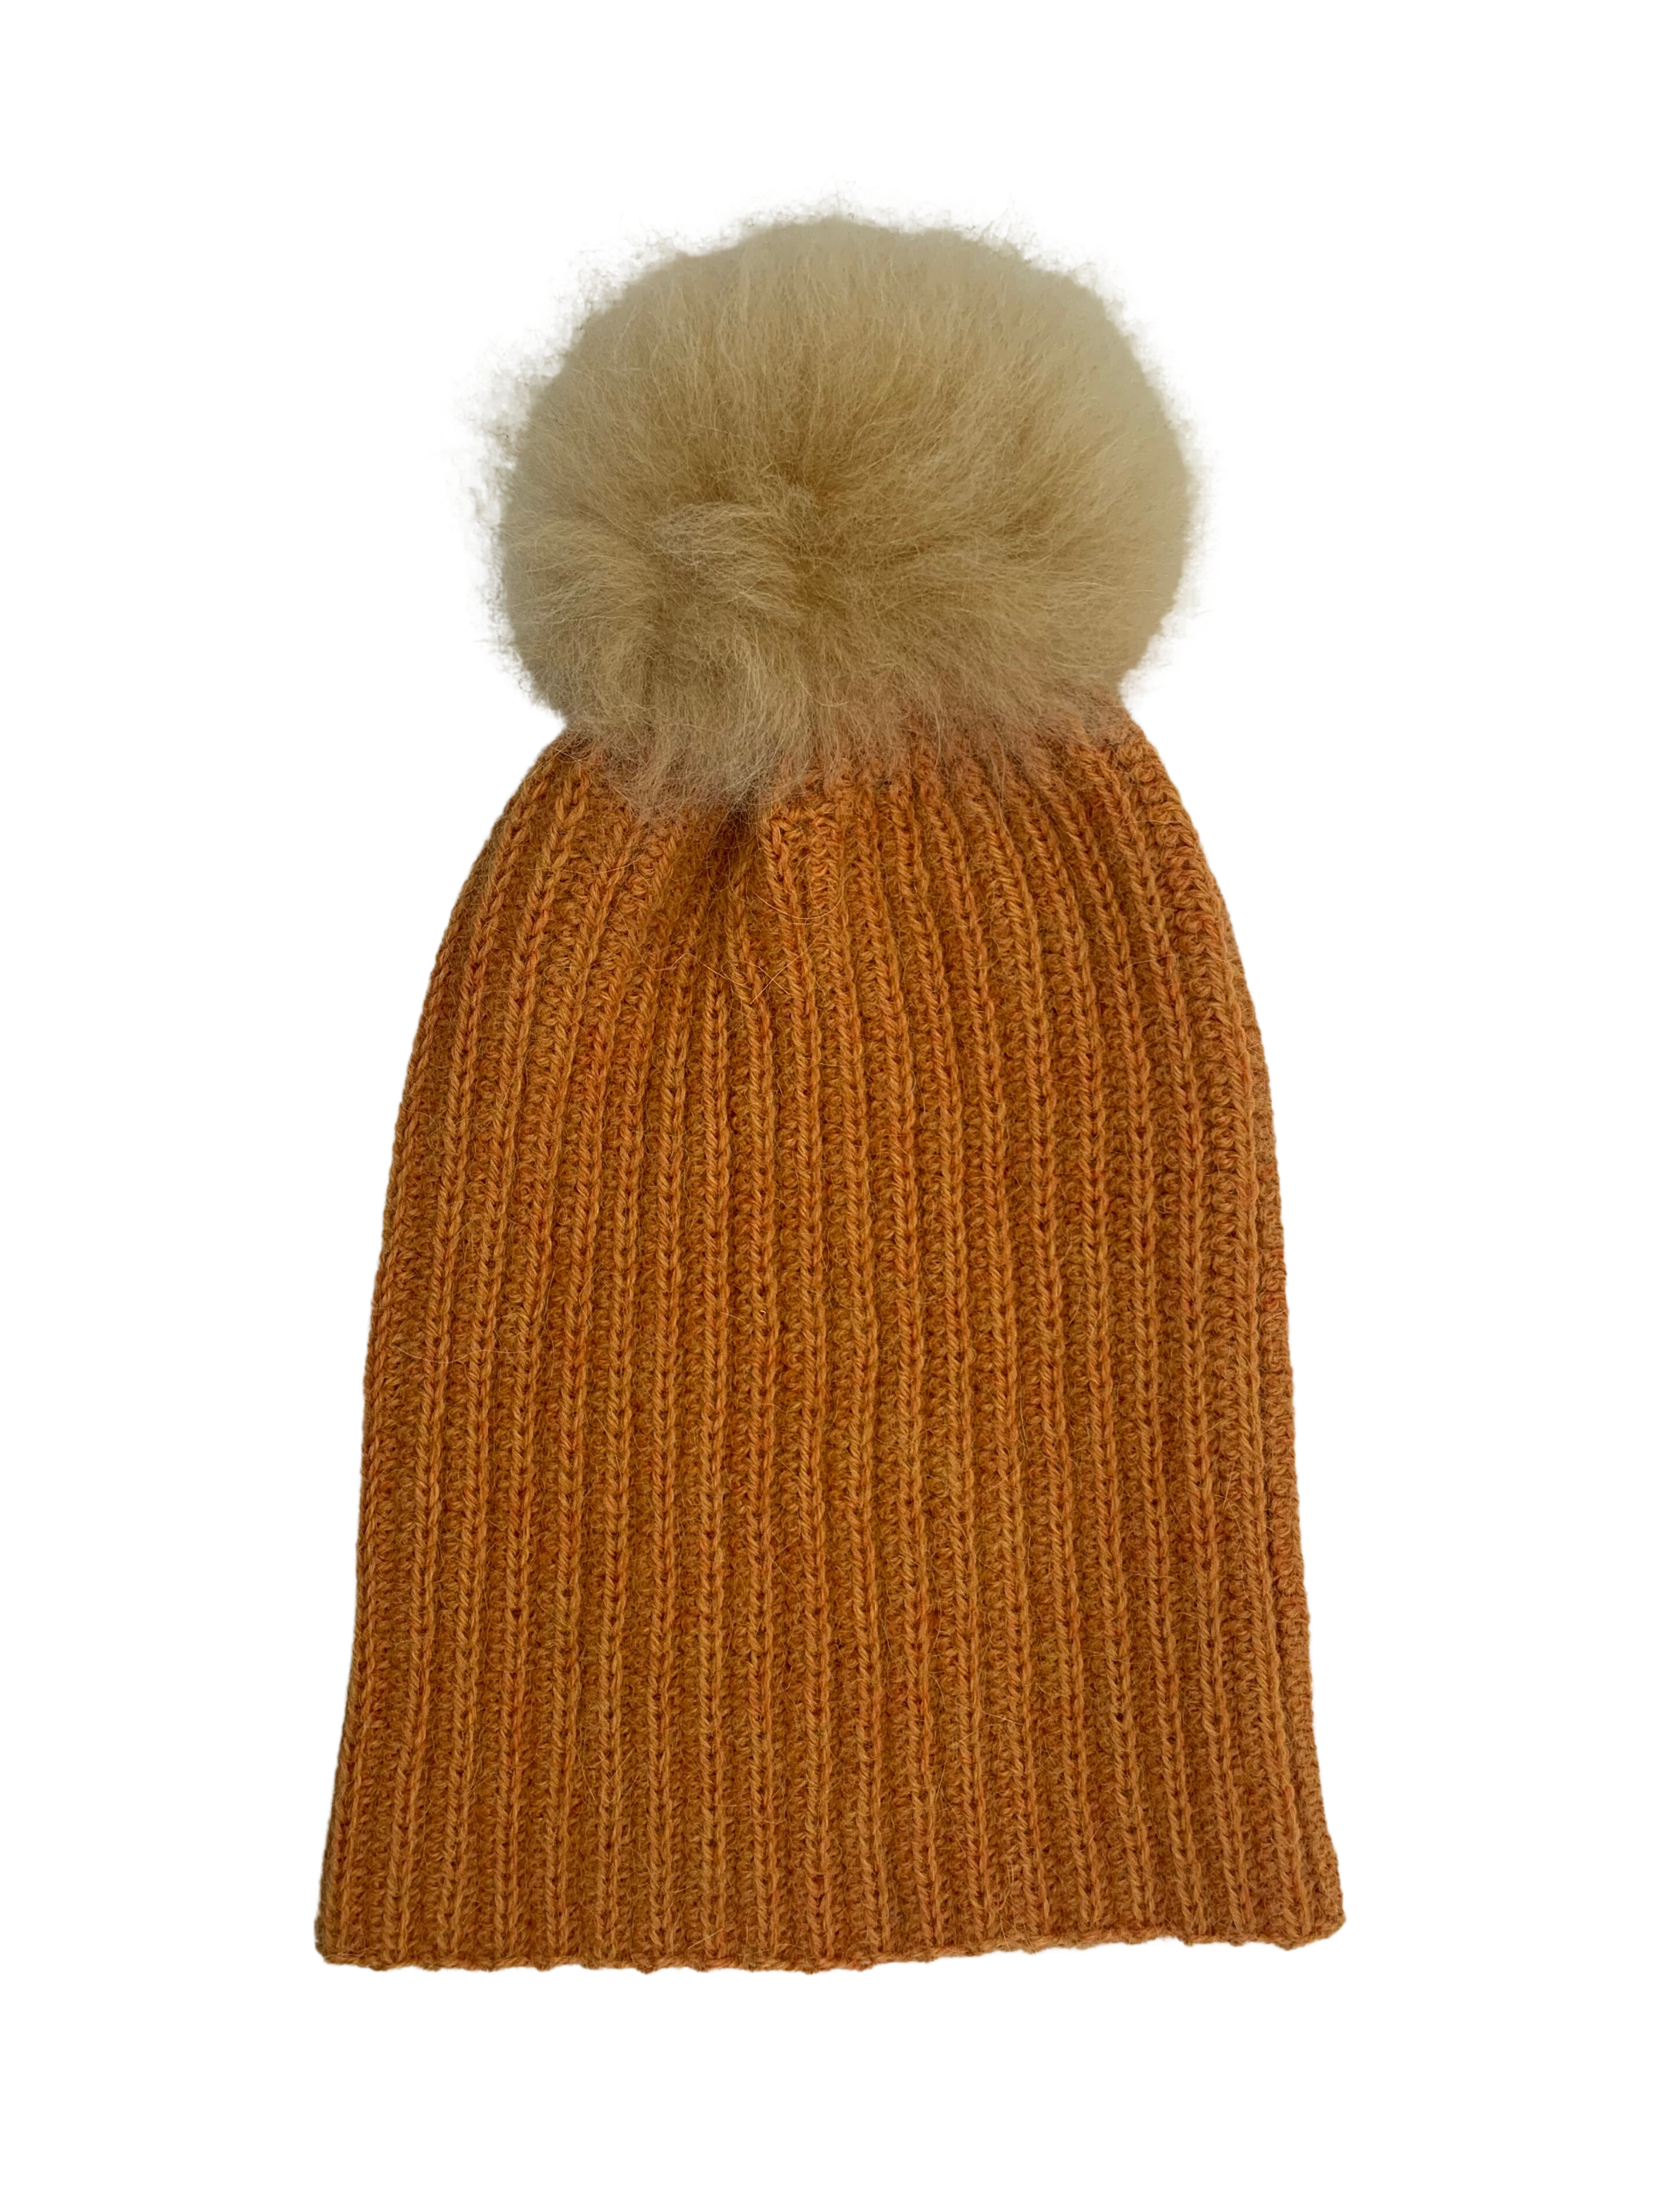 Wholesale Hats: Alpaca Fur Pom Pom Cable Hat